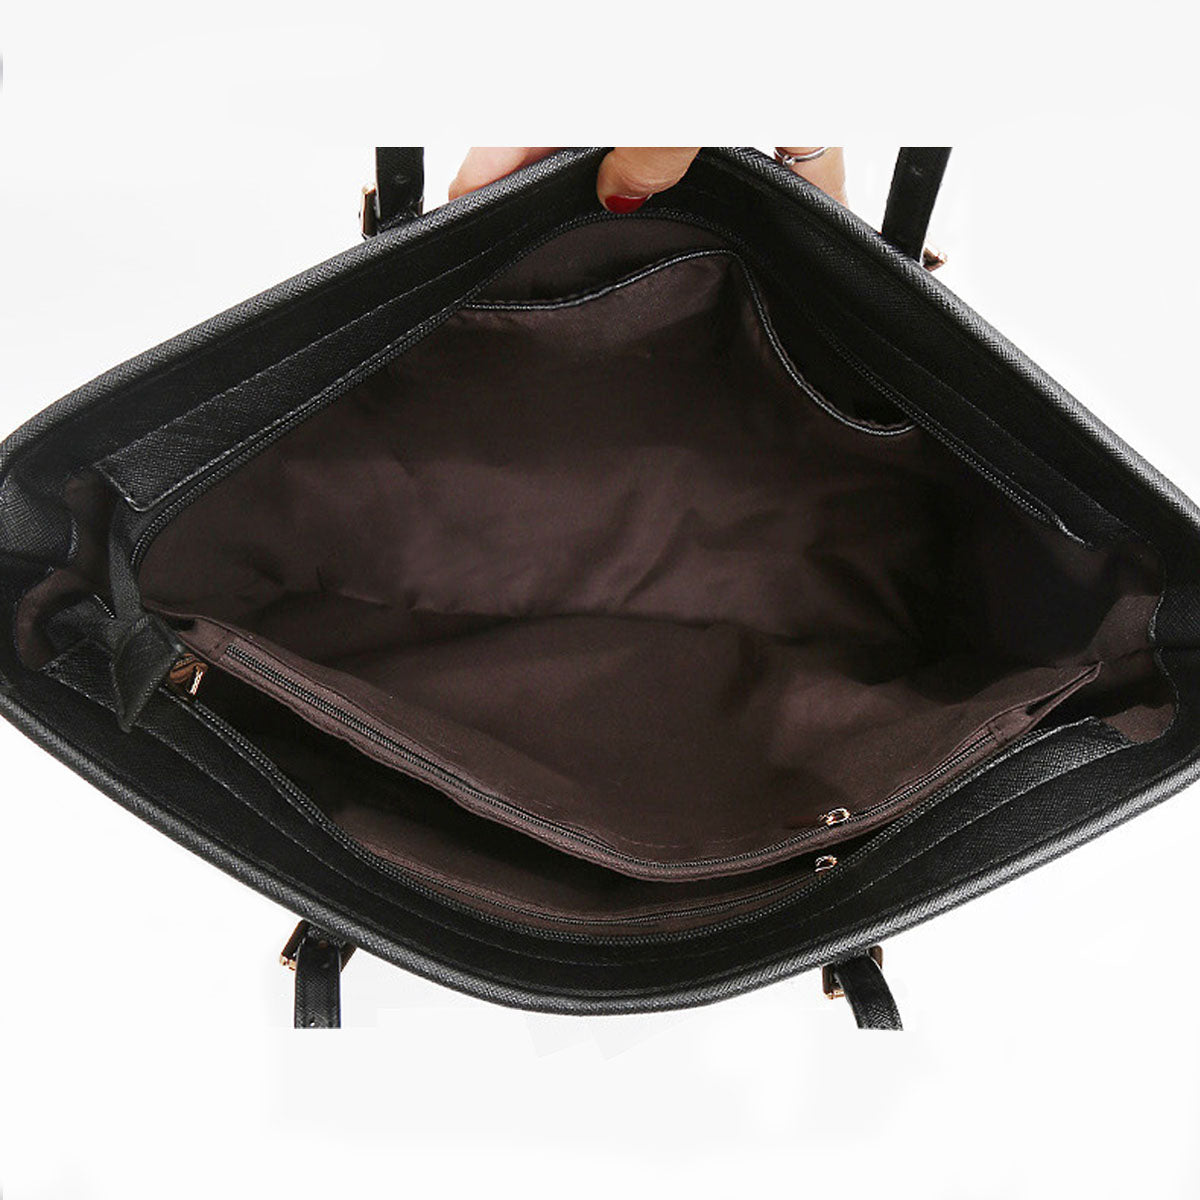 Leonberger Tote Bag V1